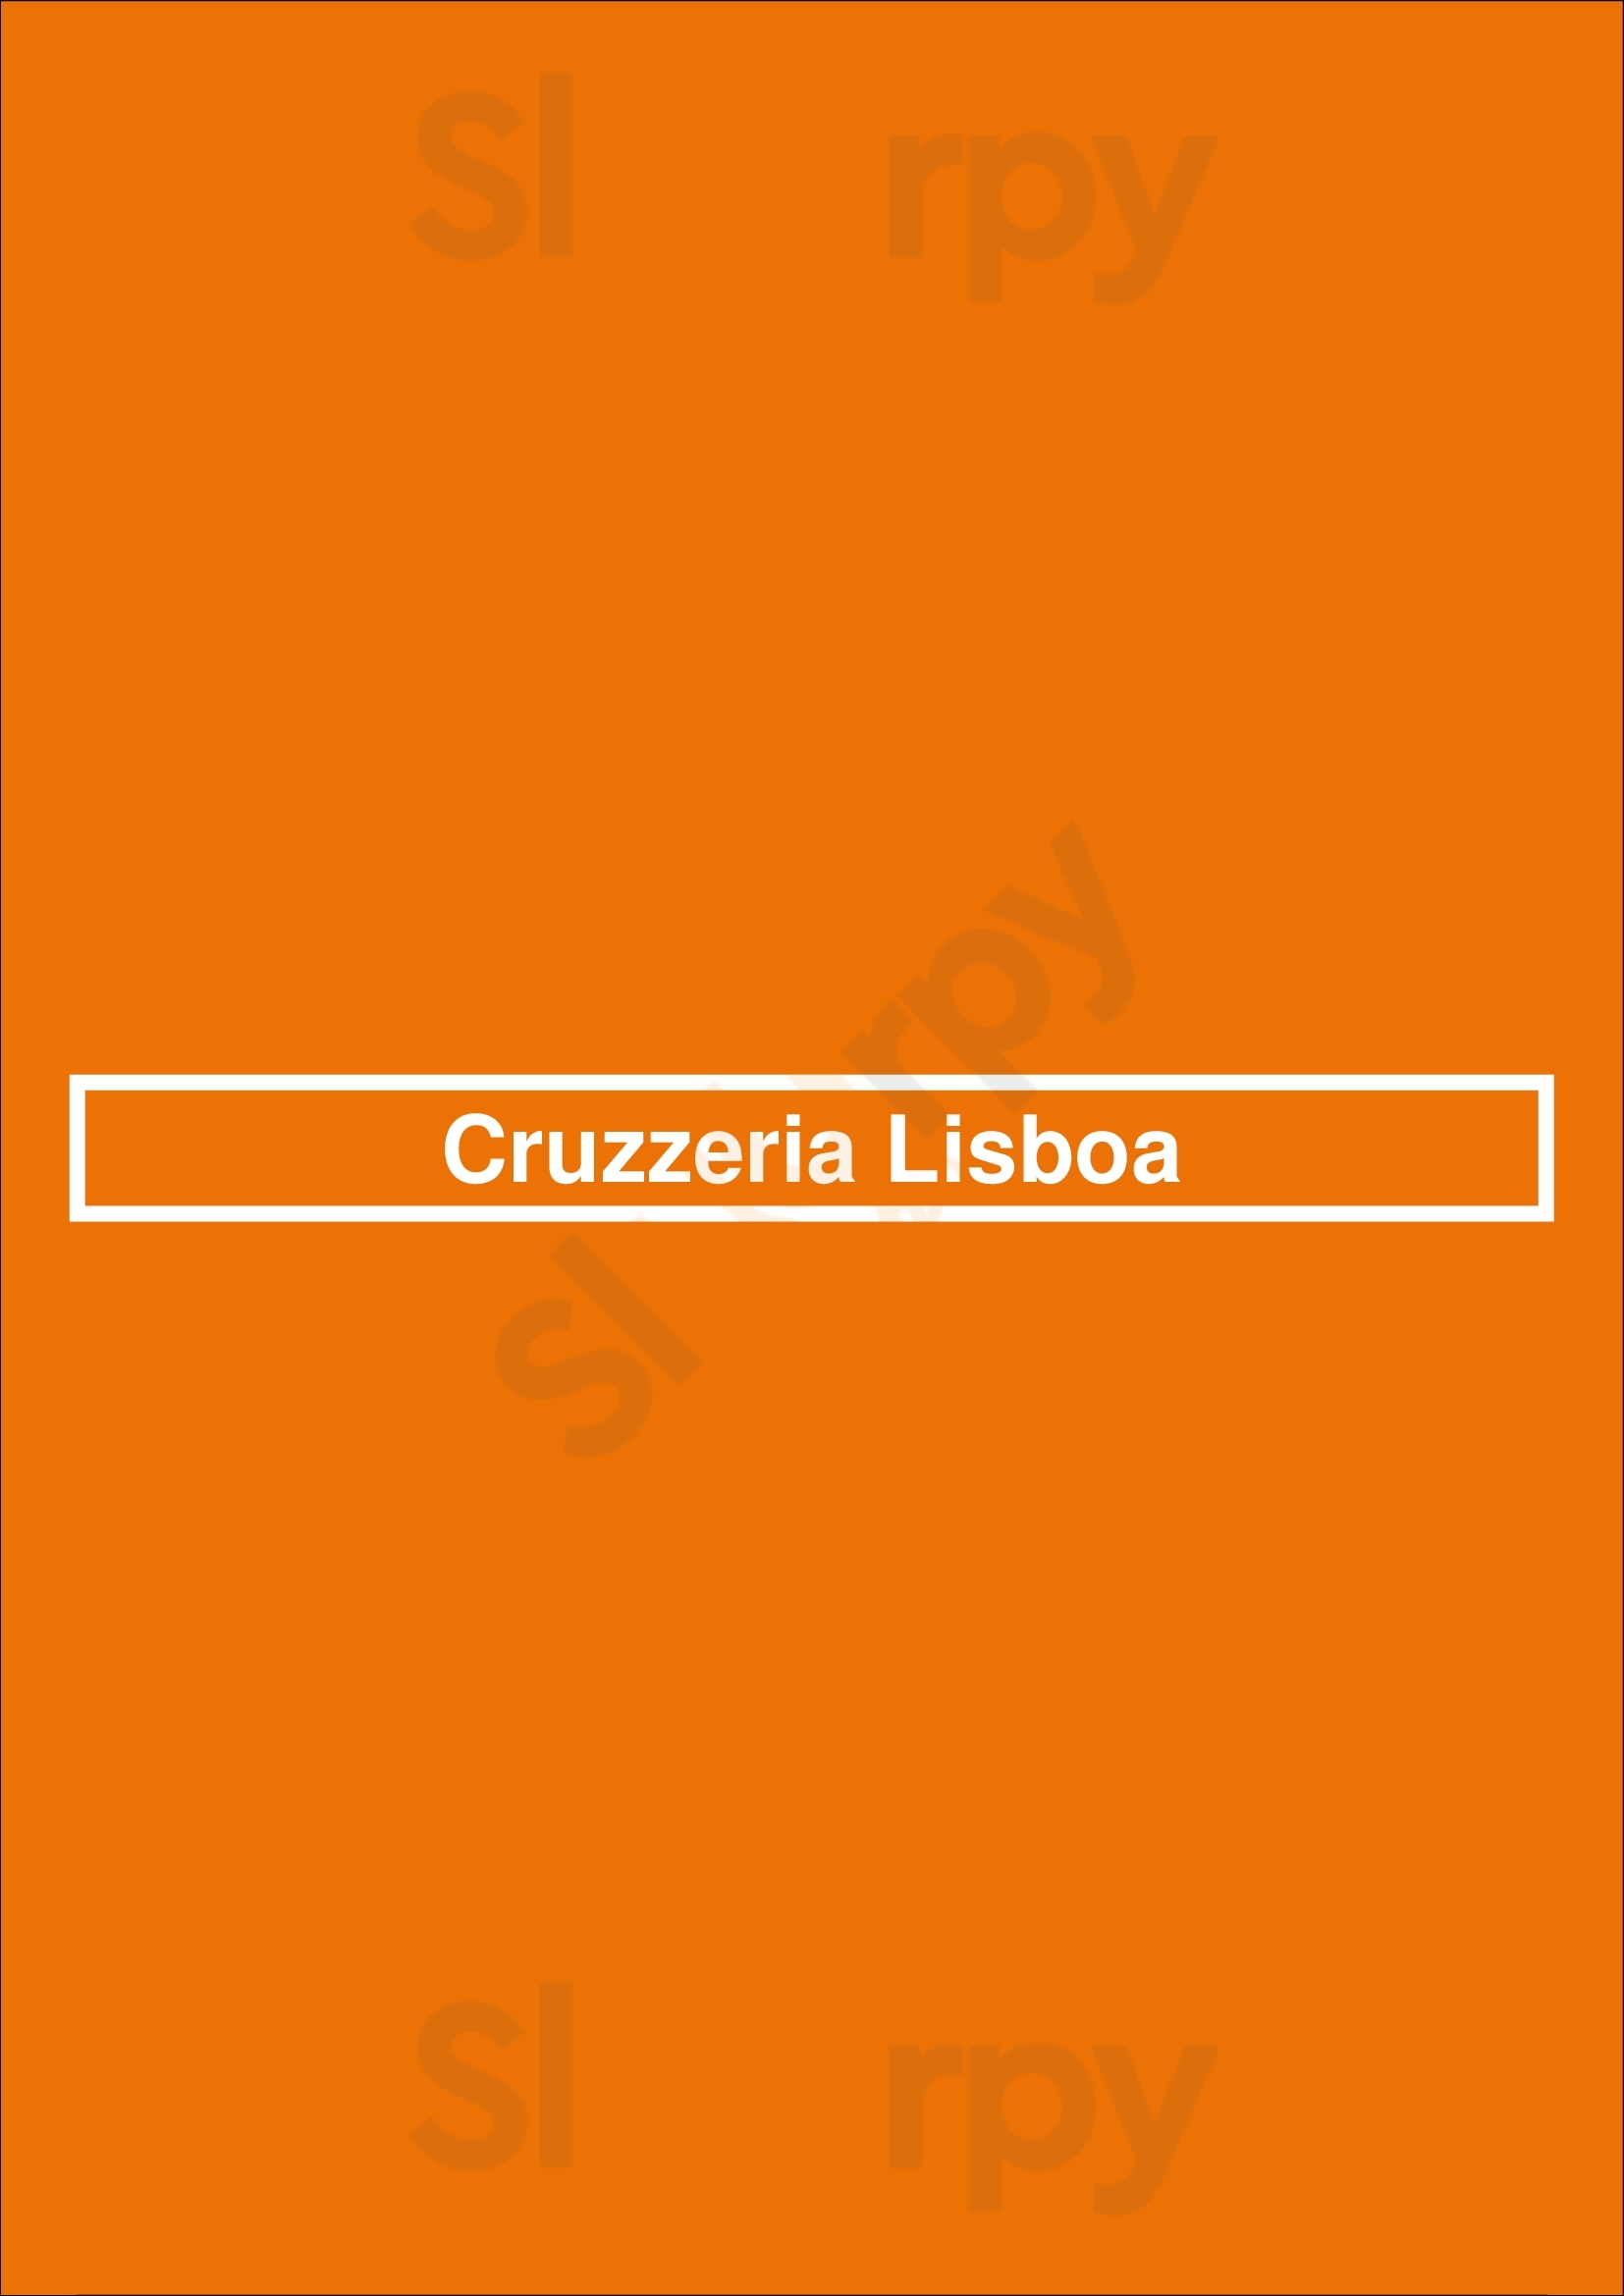 Cruzzeria Lisboa Lisboa Menu - 1